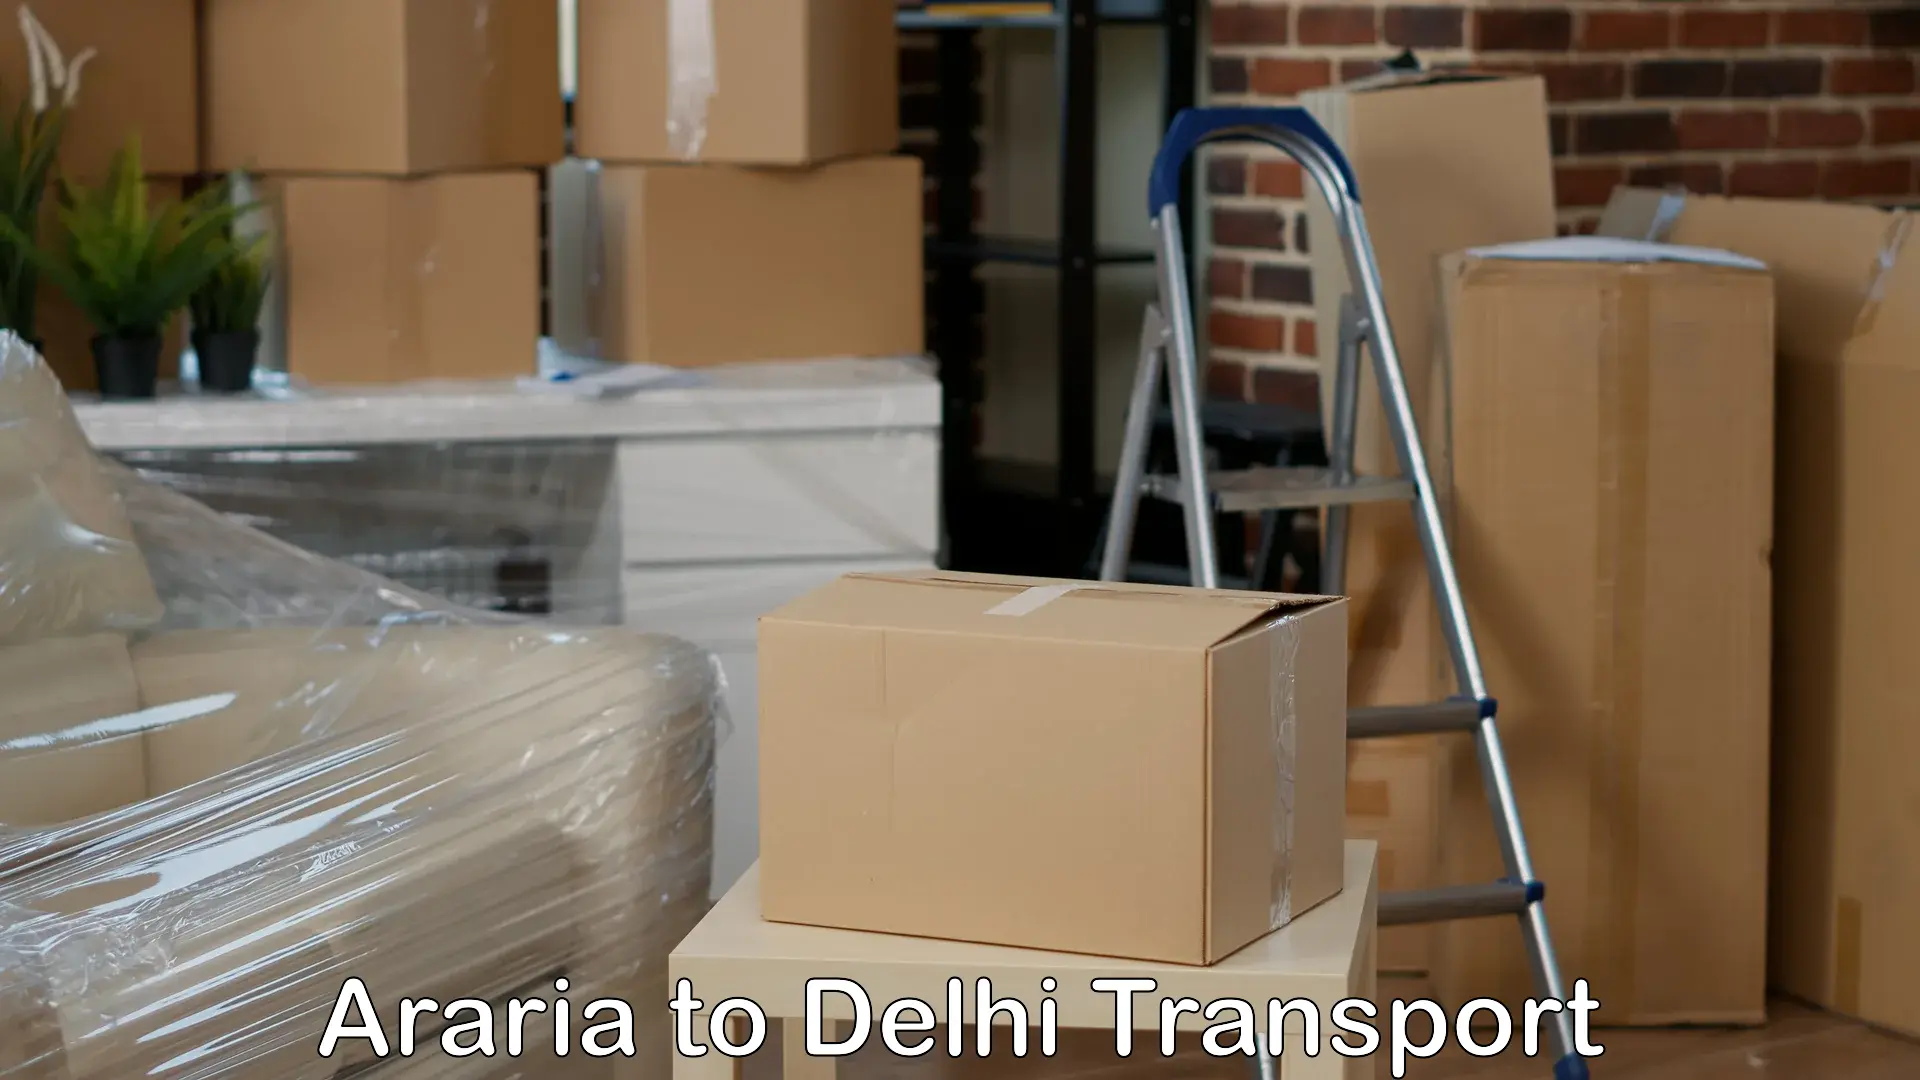 Commercial transport service Araria to Delhi